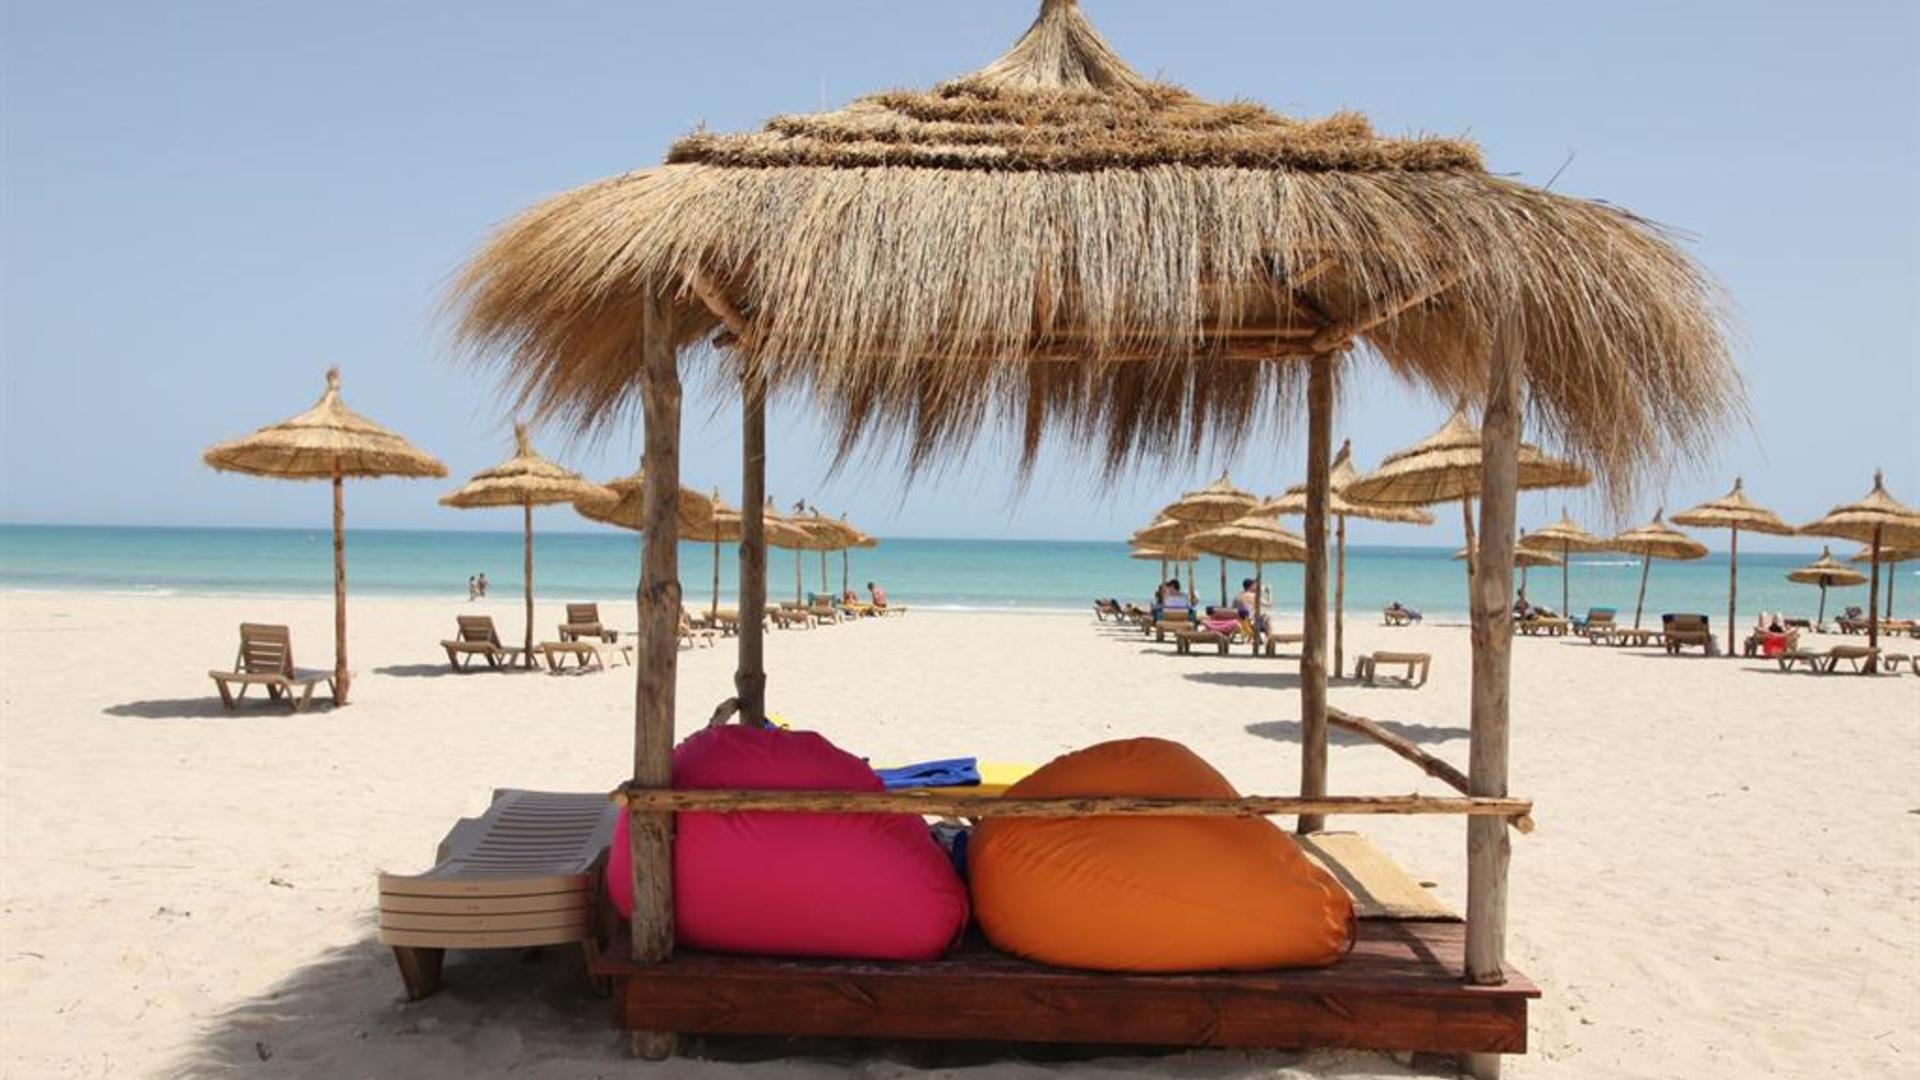 Остров джерба в тунисе – пляжи, отели и достопримечательности